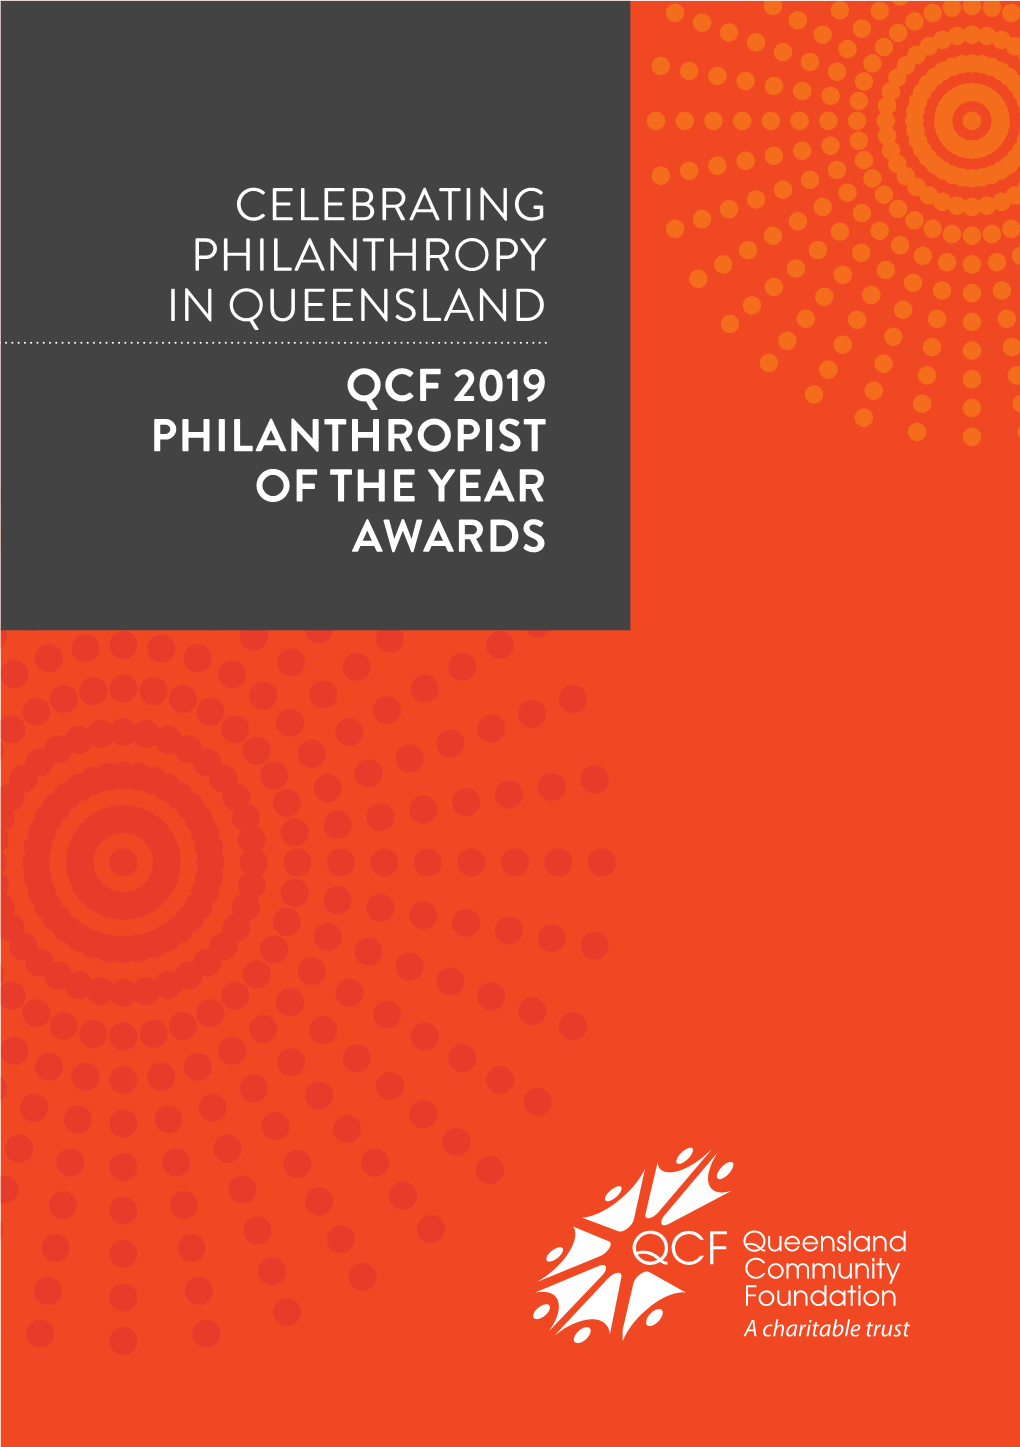 Celebrating Philanthropy in Queensland Qcf 2019